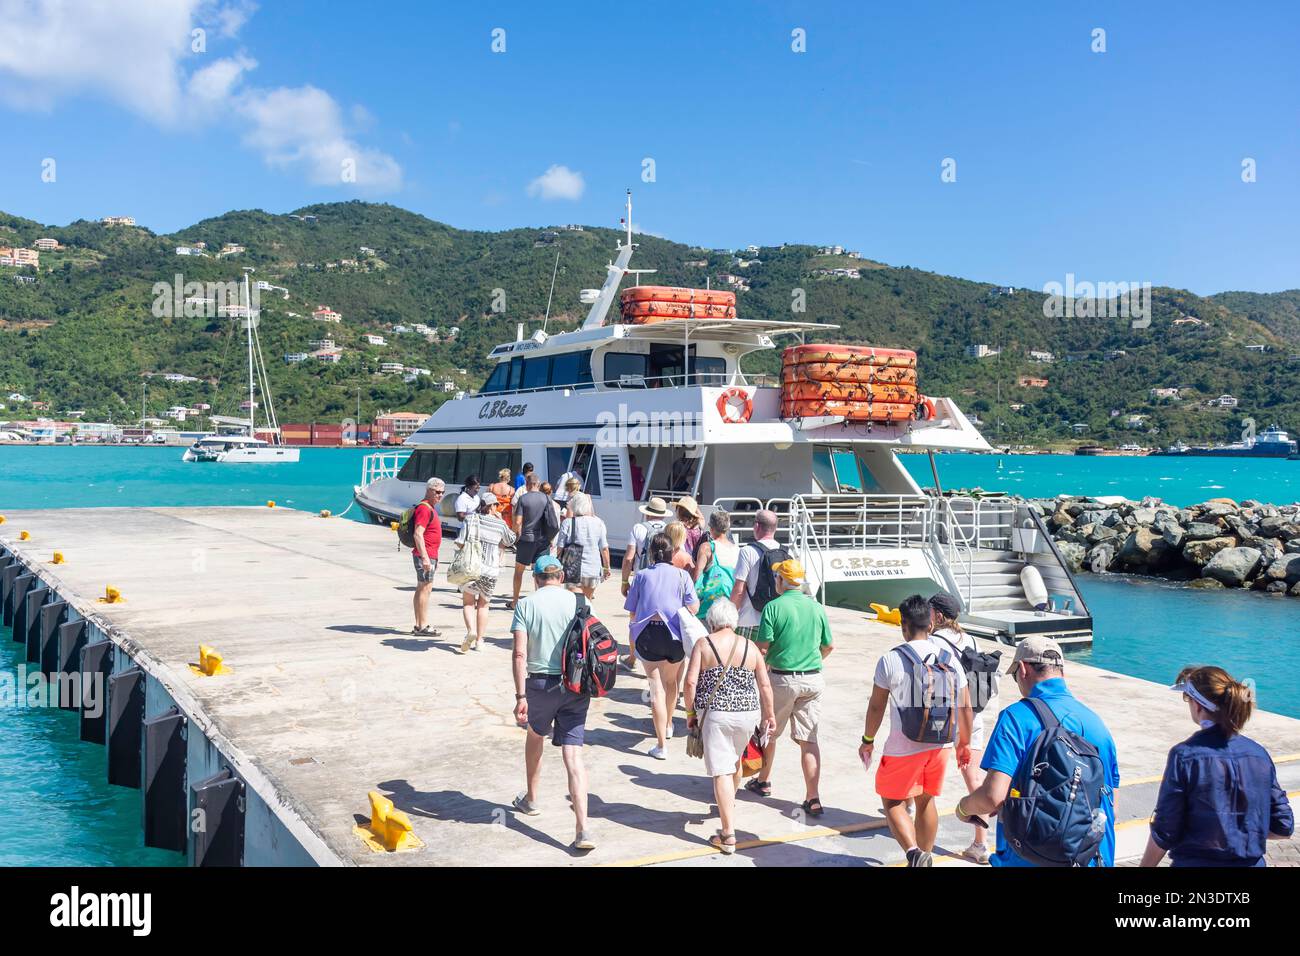 Passagiere, die an Bord des C Breeze Cruise Bootes gehen, fahren nach Virgin Gorda, Road Town, Tortola, zu den Britischen Jungferninseln (BVI), zu den kleinen Antillen, Karibik Stockfoto